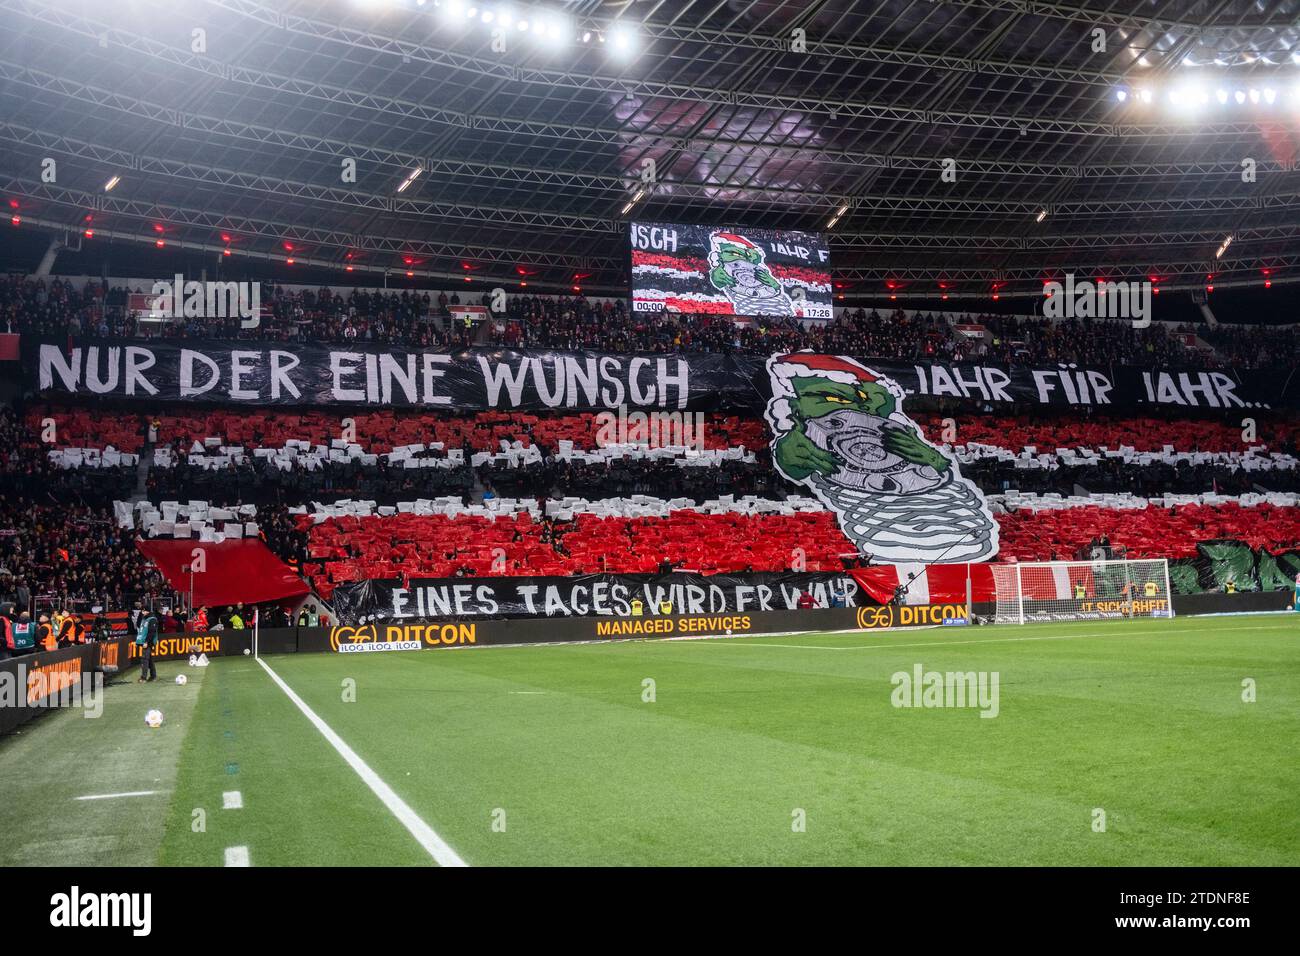 Leverkusen, Bayarena, 17.12.23: Choreographie der Leverkusener Fans „Nur der eine Wunsch, Jahr für Jahr“ beim 1.Bundesliga Spiel Bayer 04 Leverkusen v Stock Photo